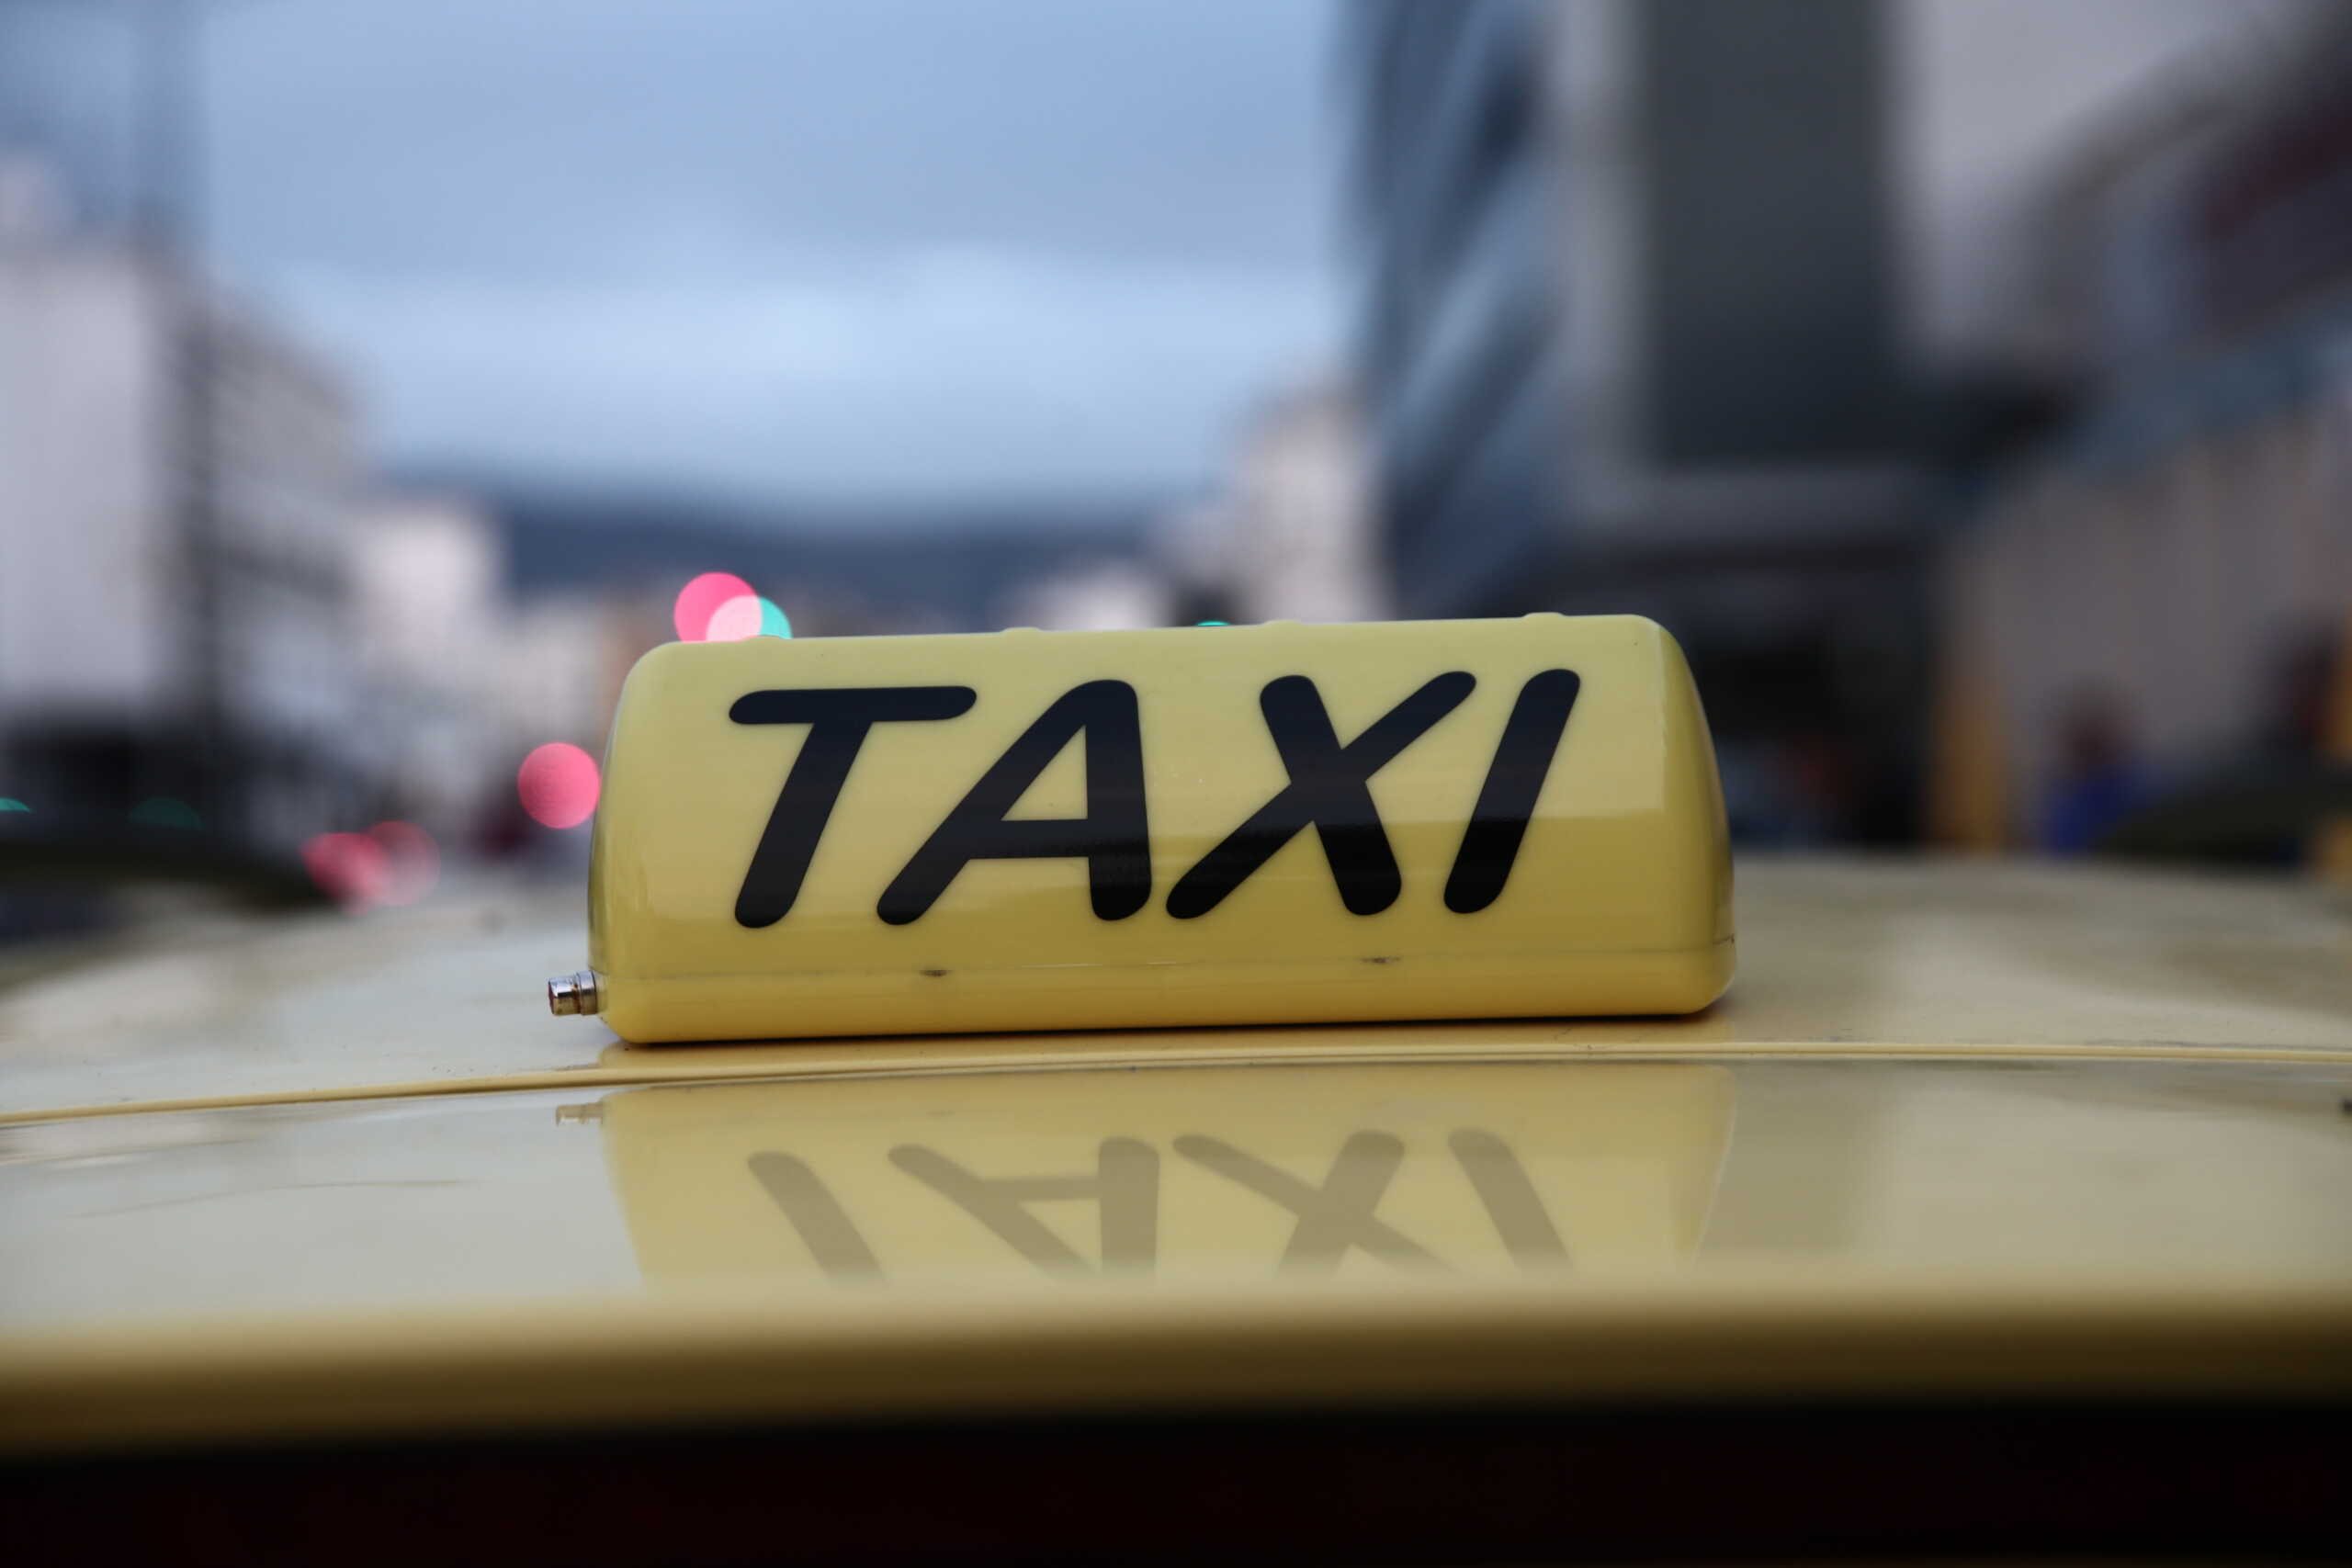 Παλαιό Φάληρο: Λήστεψαν οδηγό ταξί και του πήραν το αυτοκίνητο – Κινηματογραφική καταδίωξη